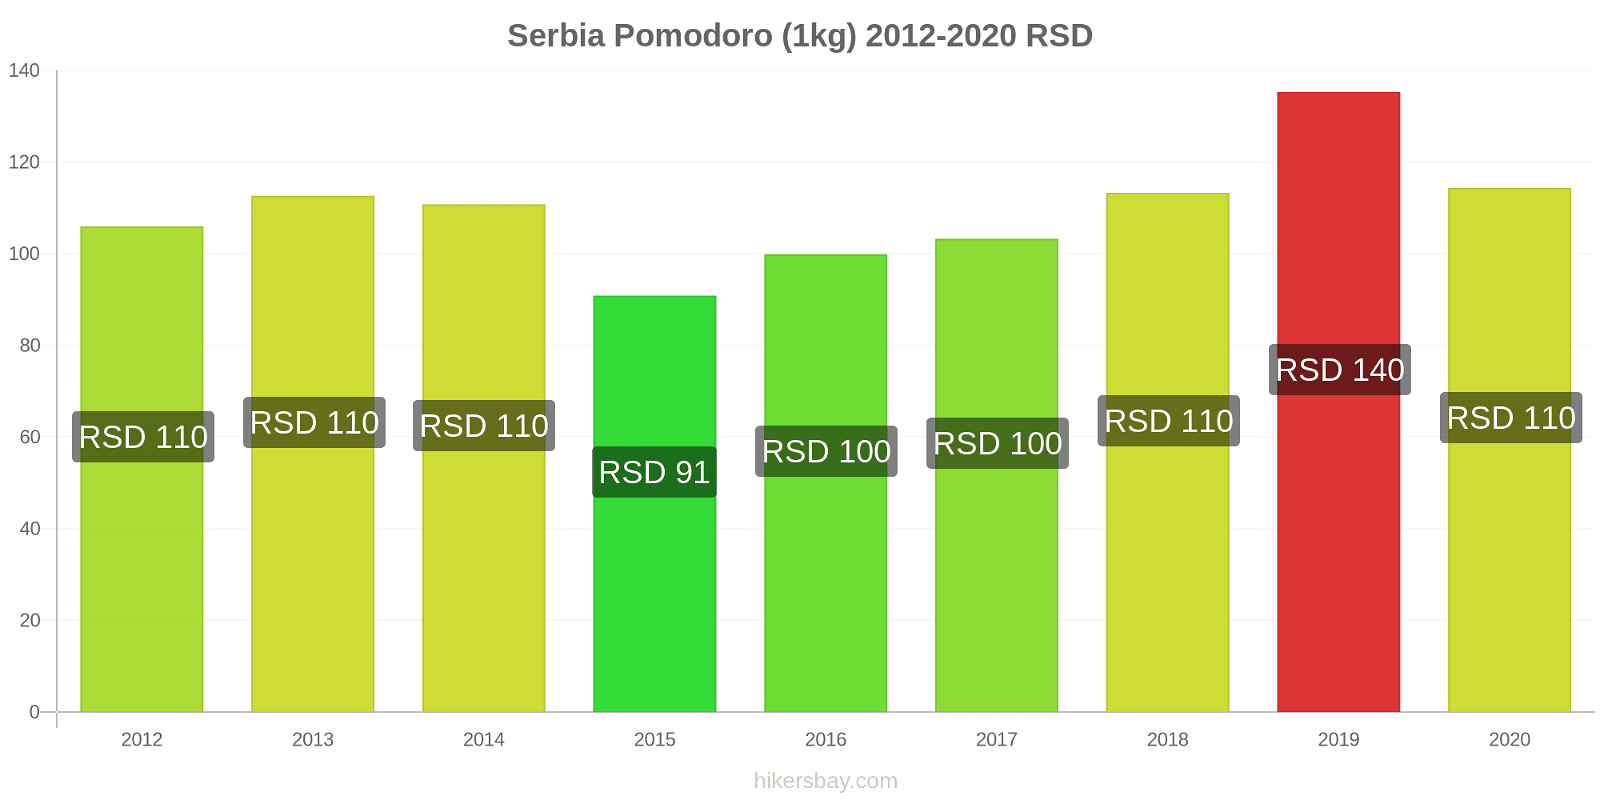 Serbia variazioni di prezzo Pomodoro (1kg) hikersbay.com